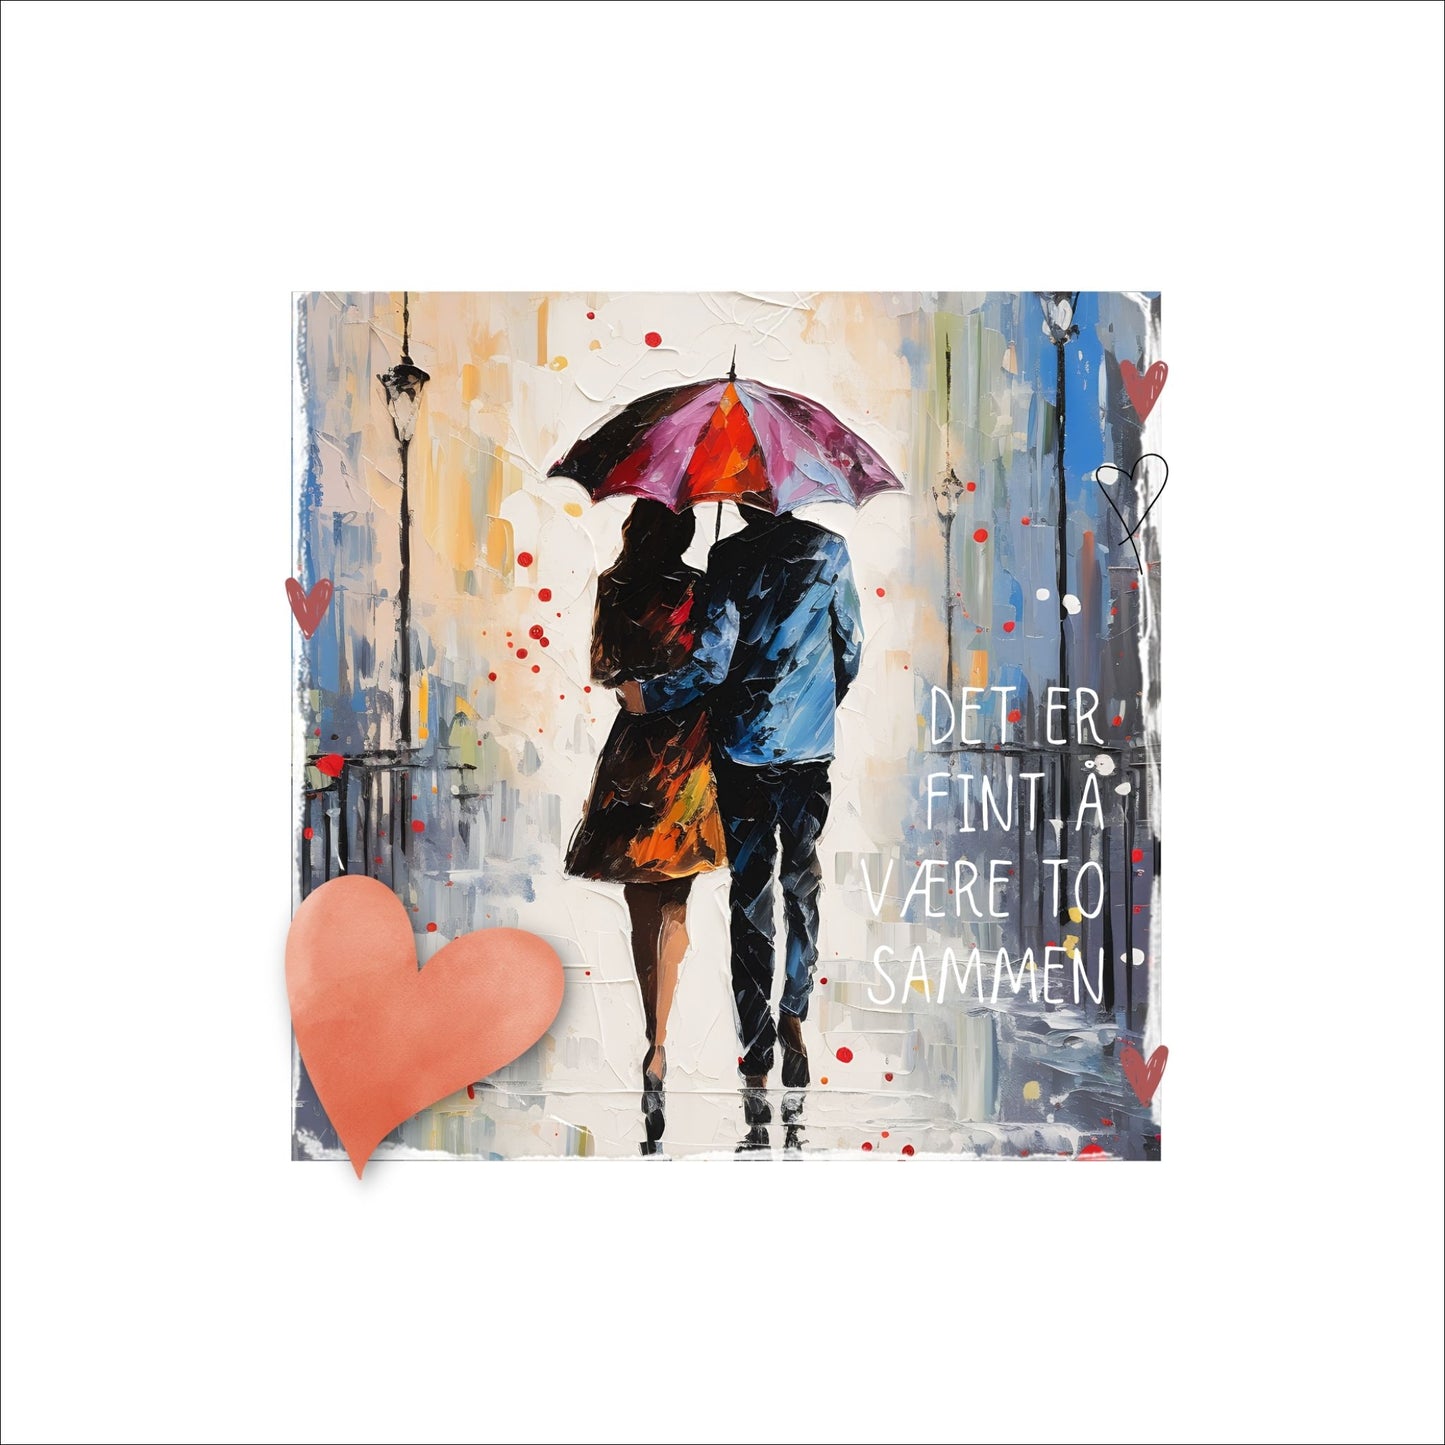 Plakat med rosa hjerte og tekst "Det er fint å være to sammen" - og et motiv med et kjærestepar som går under en rød paraply. Bildet har en hvit kant på 4 cm. 